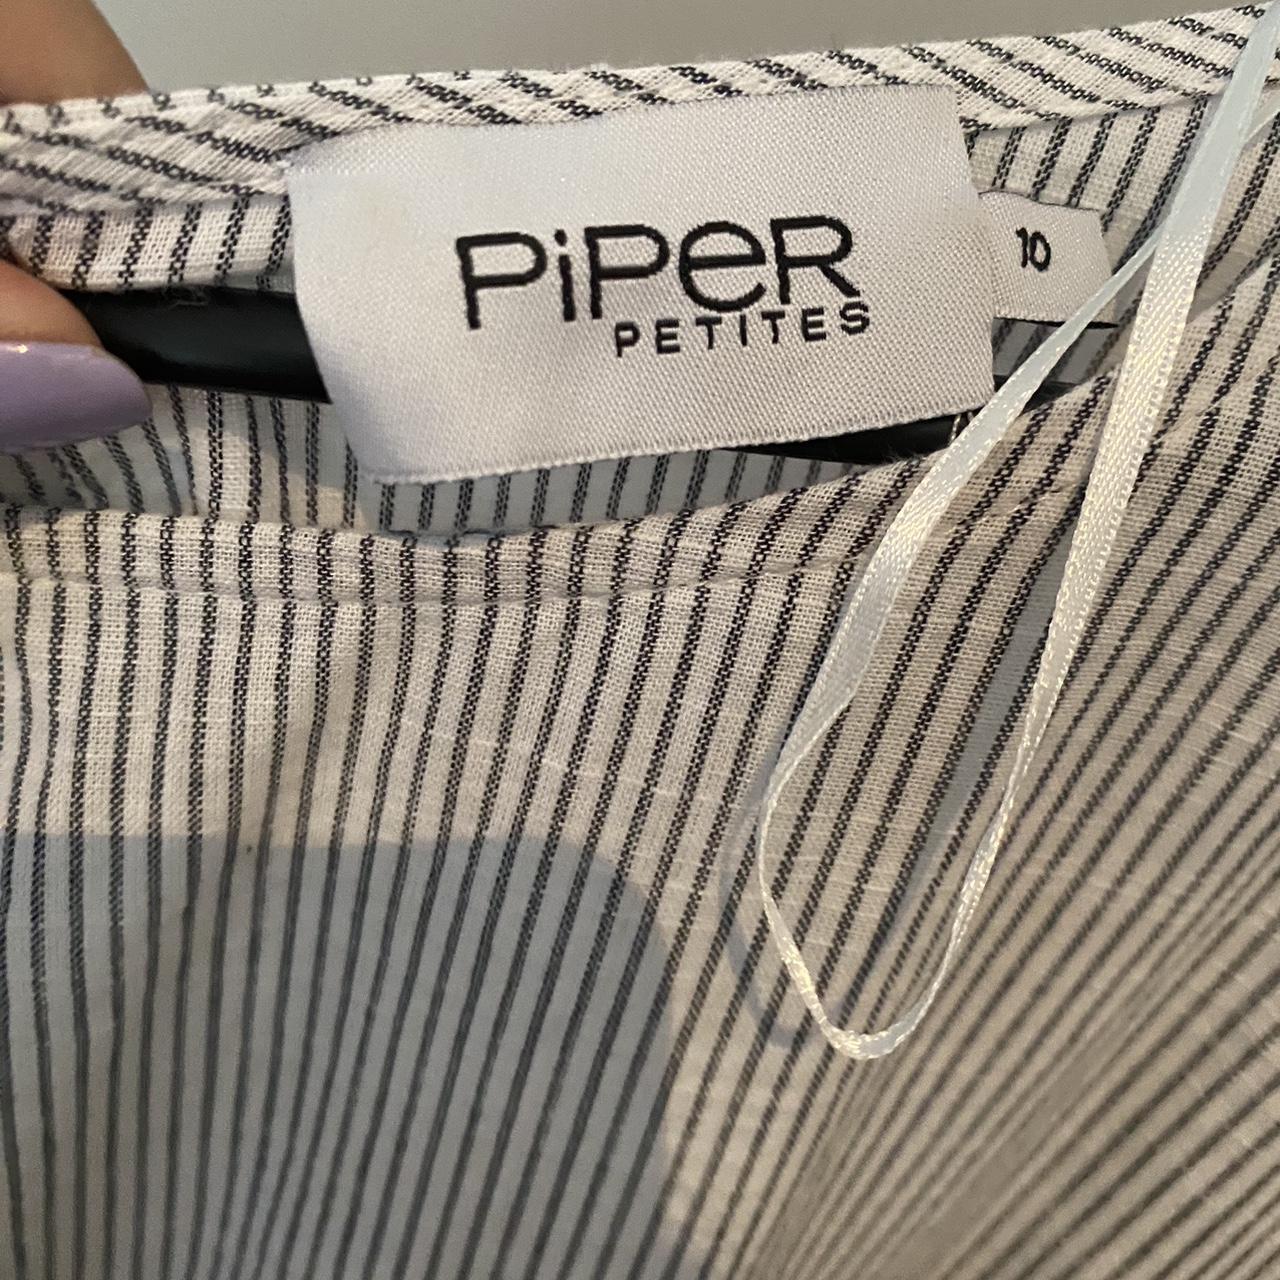 Piper petites dress Excellent condition Size 10 - Depop